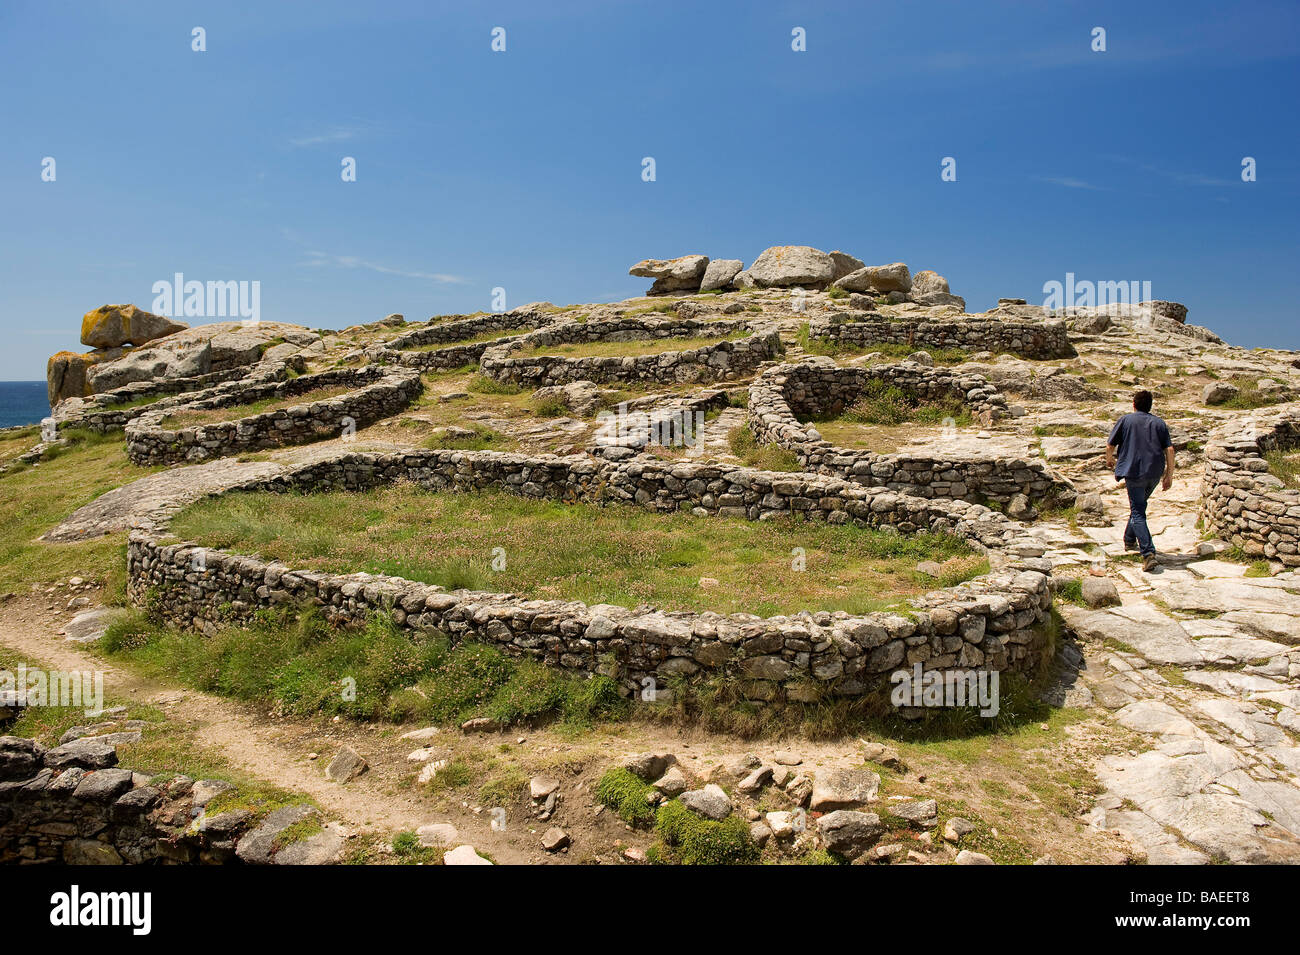 Spain, Galicia, Costa da Muerte, Castro de Barona, Celtic fortifications built in granite stone Stock Photo